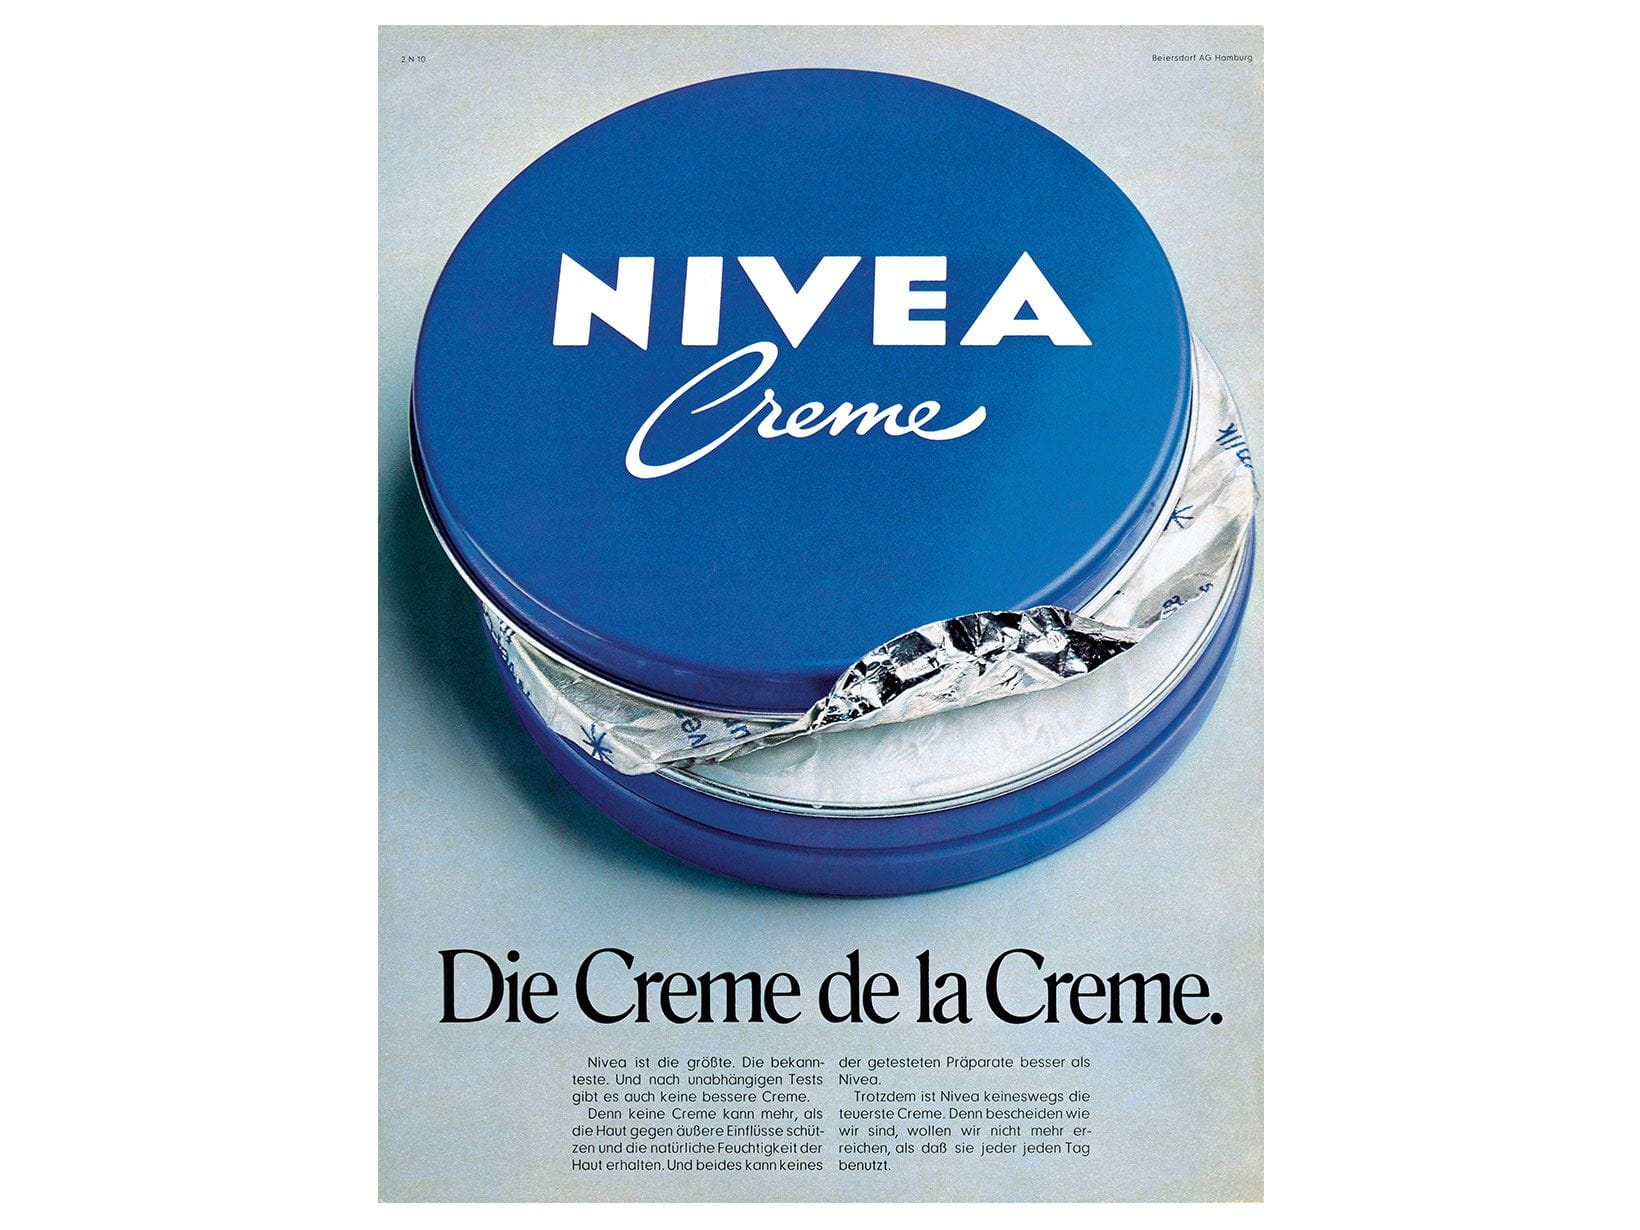 NIVEA Werbeanzeige von 1971: Die Creme de la Creme.